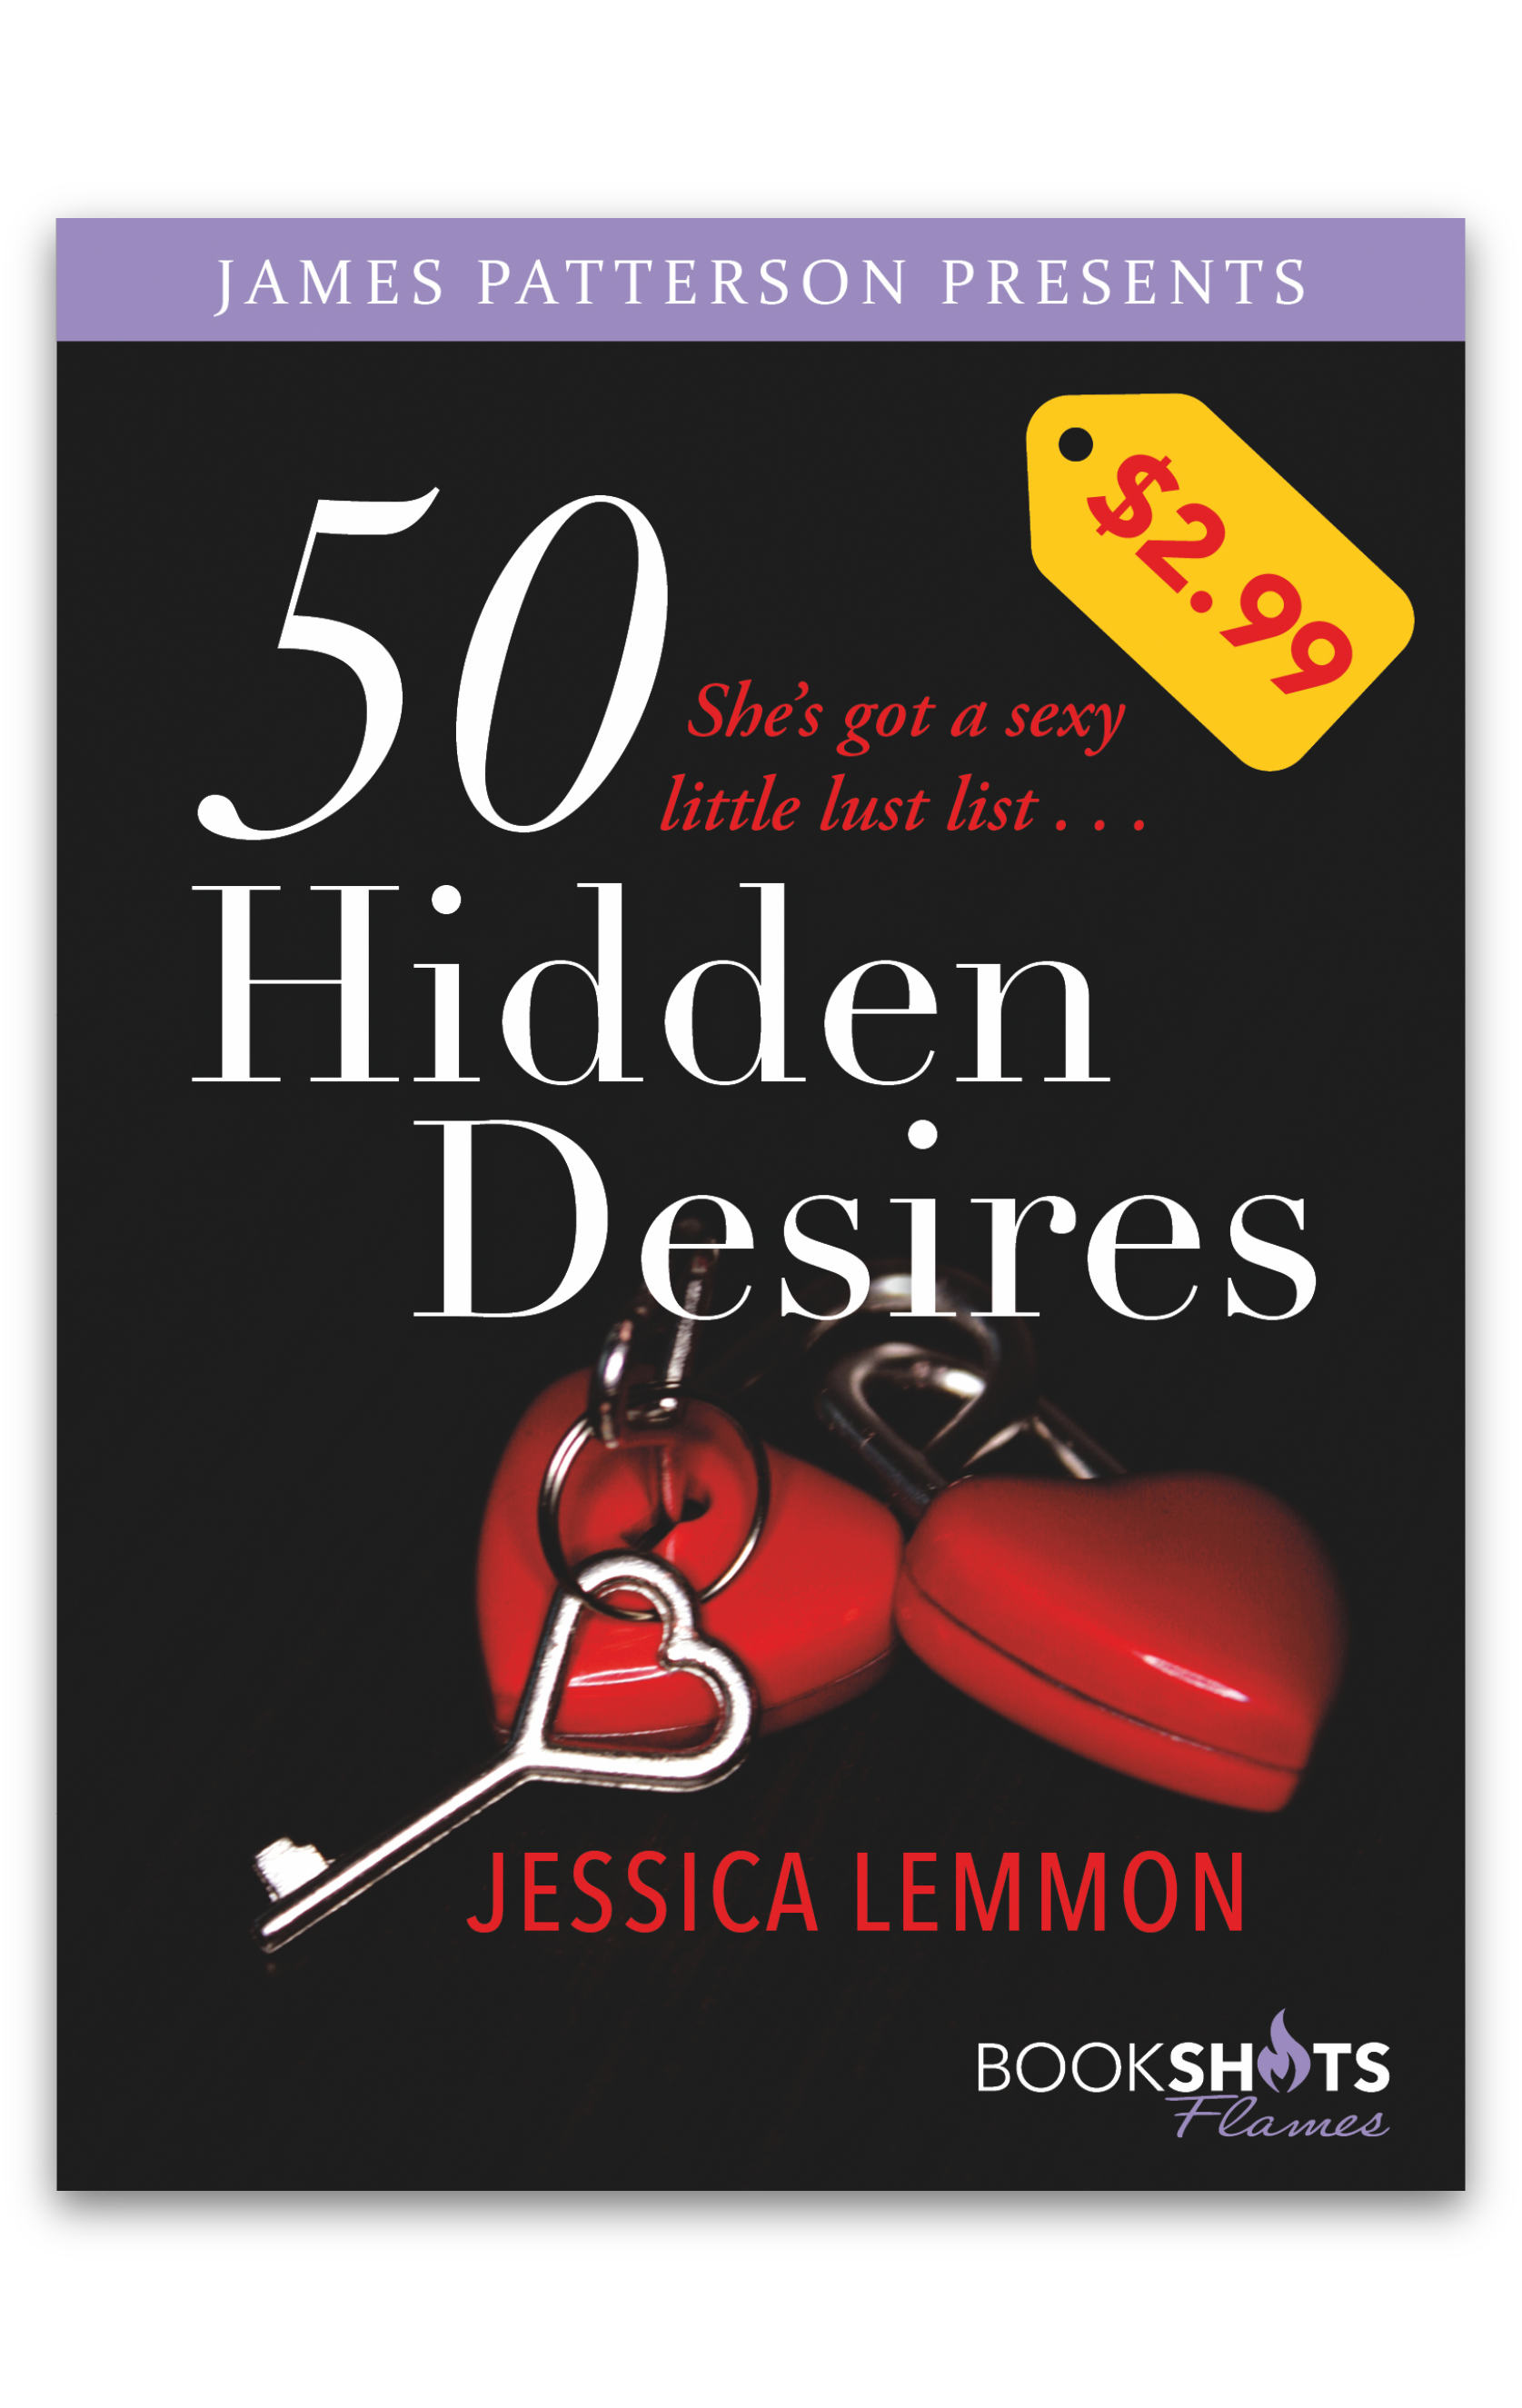 50 Hidden Desires-e.jpg